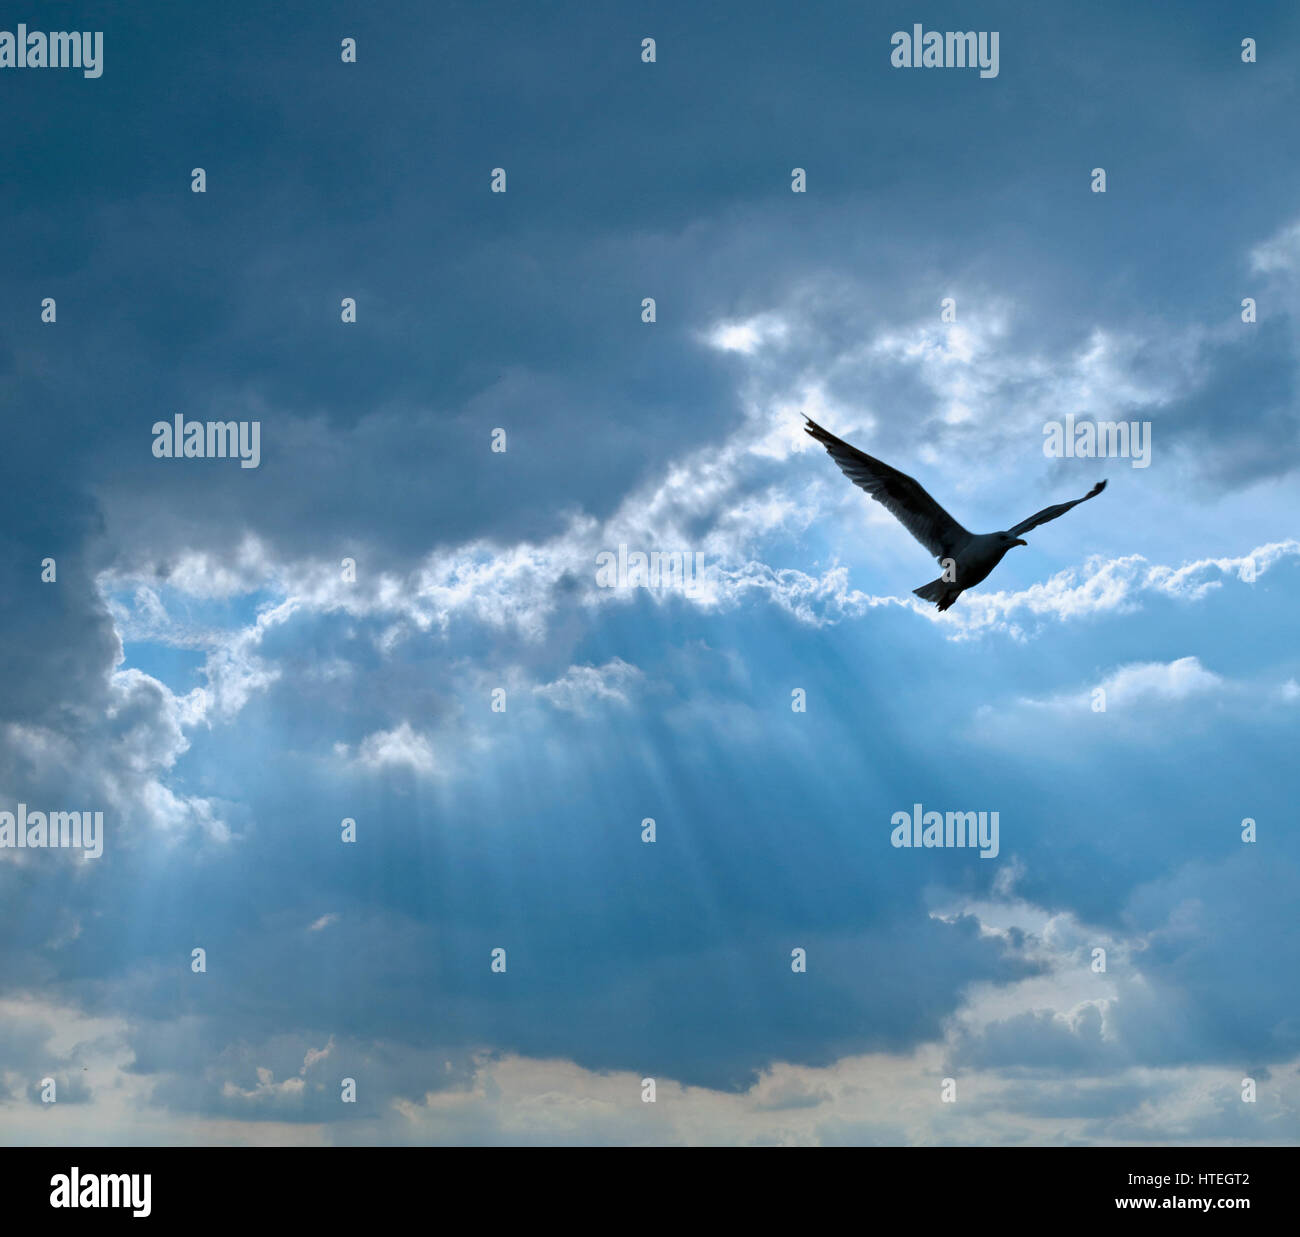 bird against cloudy sky with sun rays Stock Photo